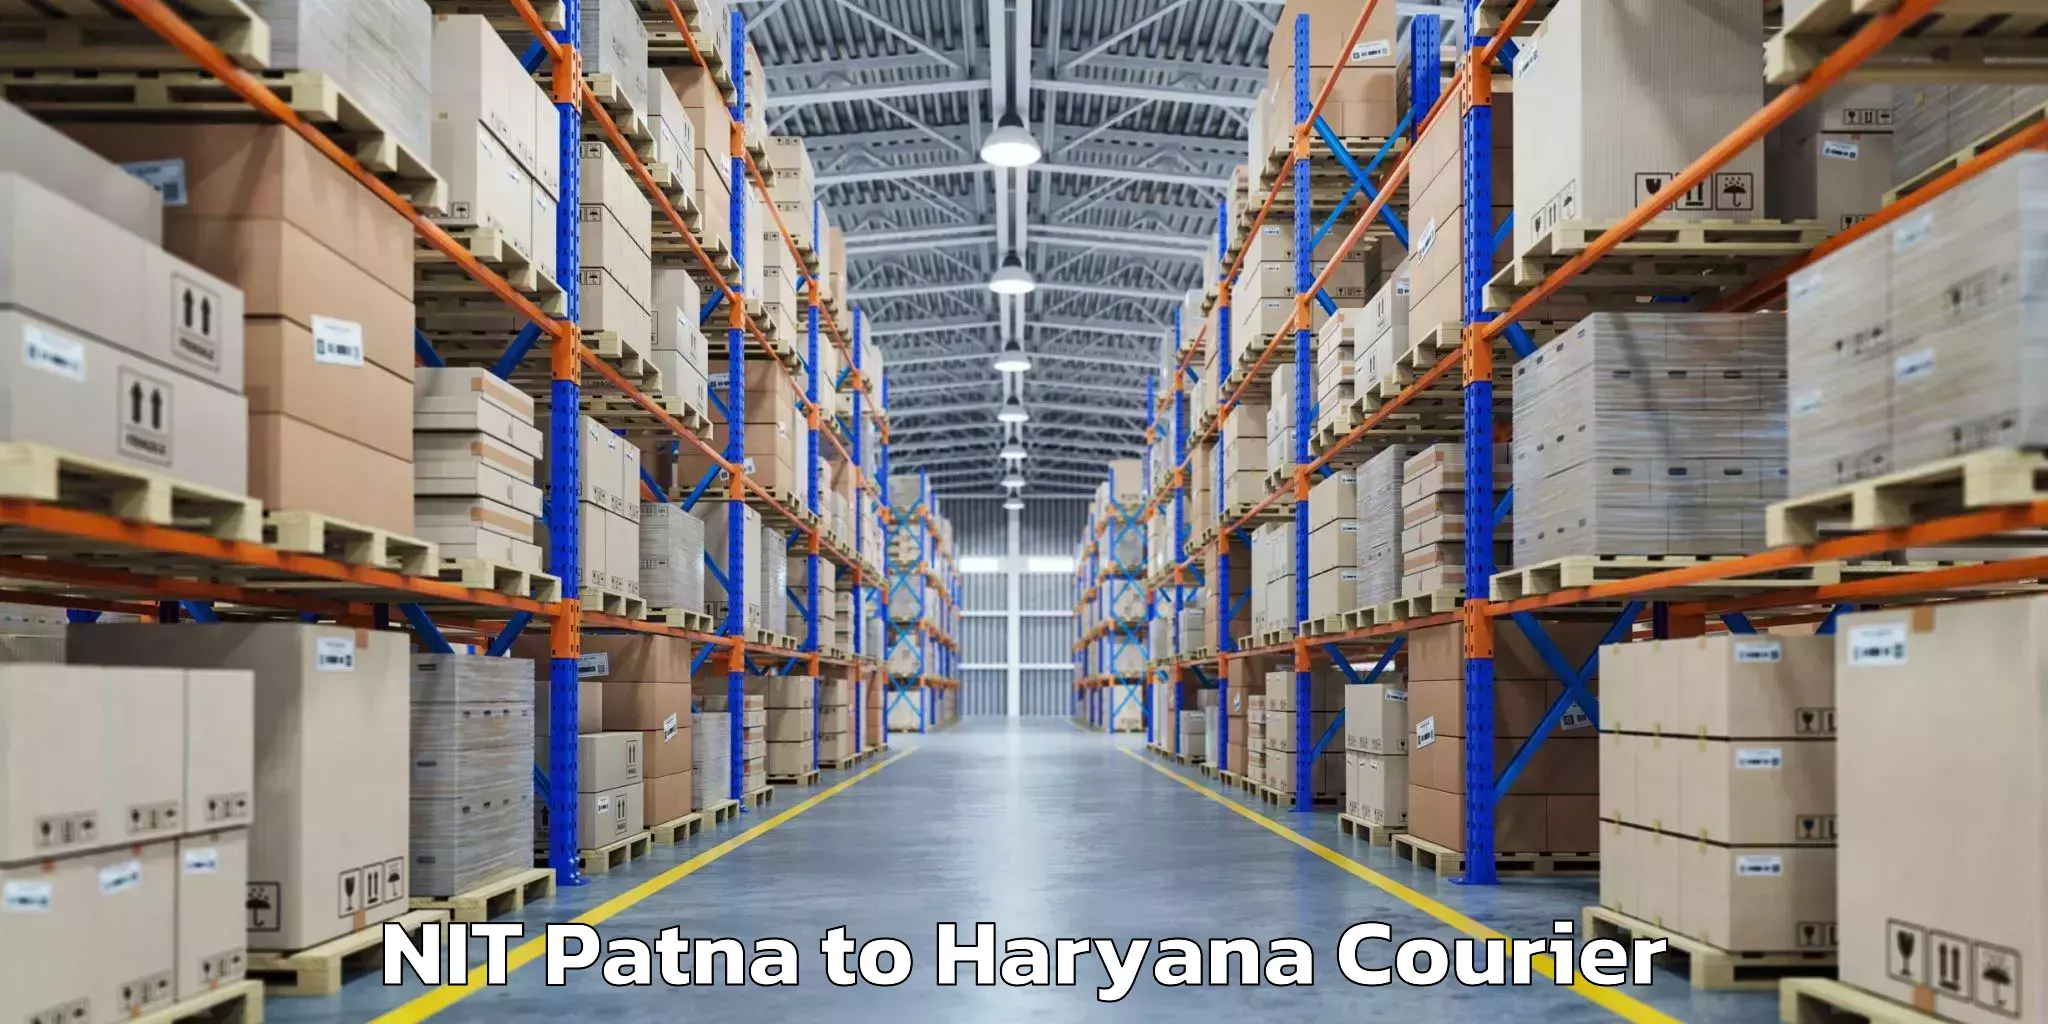 Baggage shipping service NIT Patna to Haryana